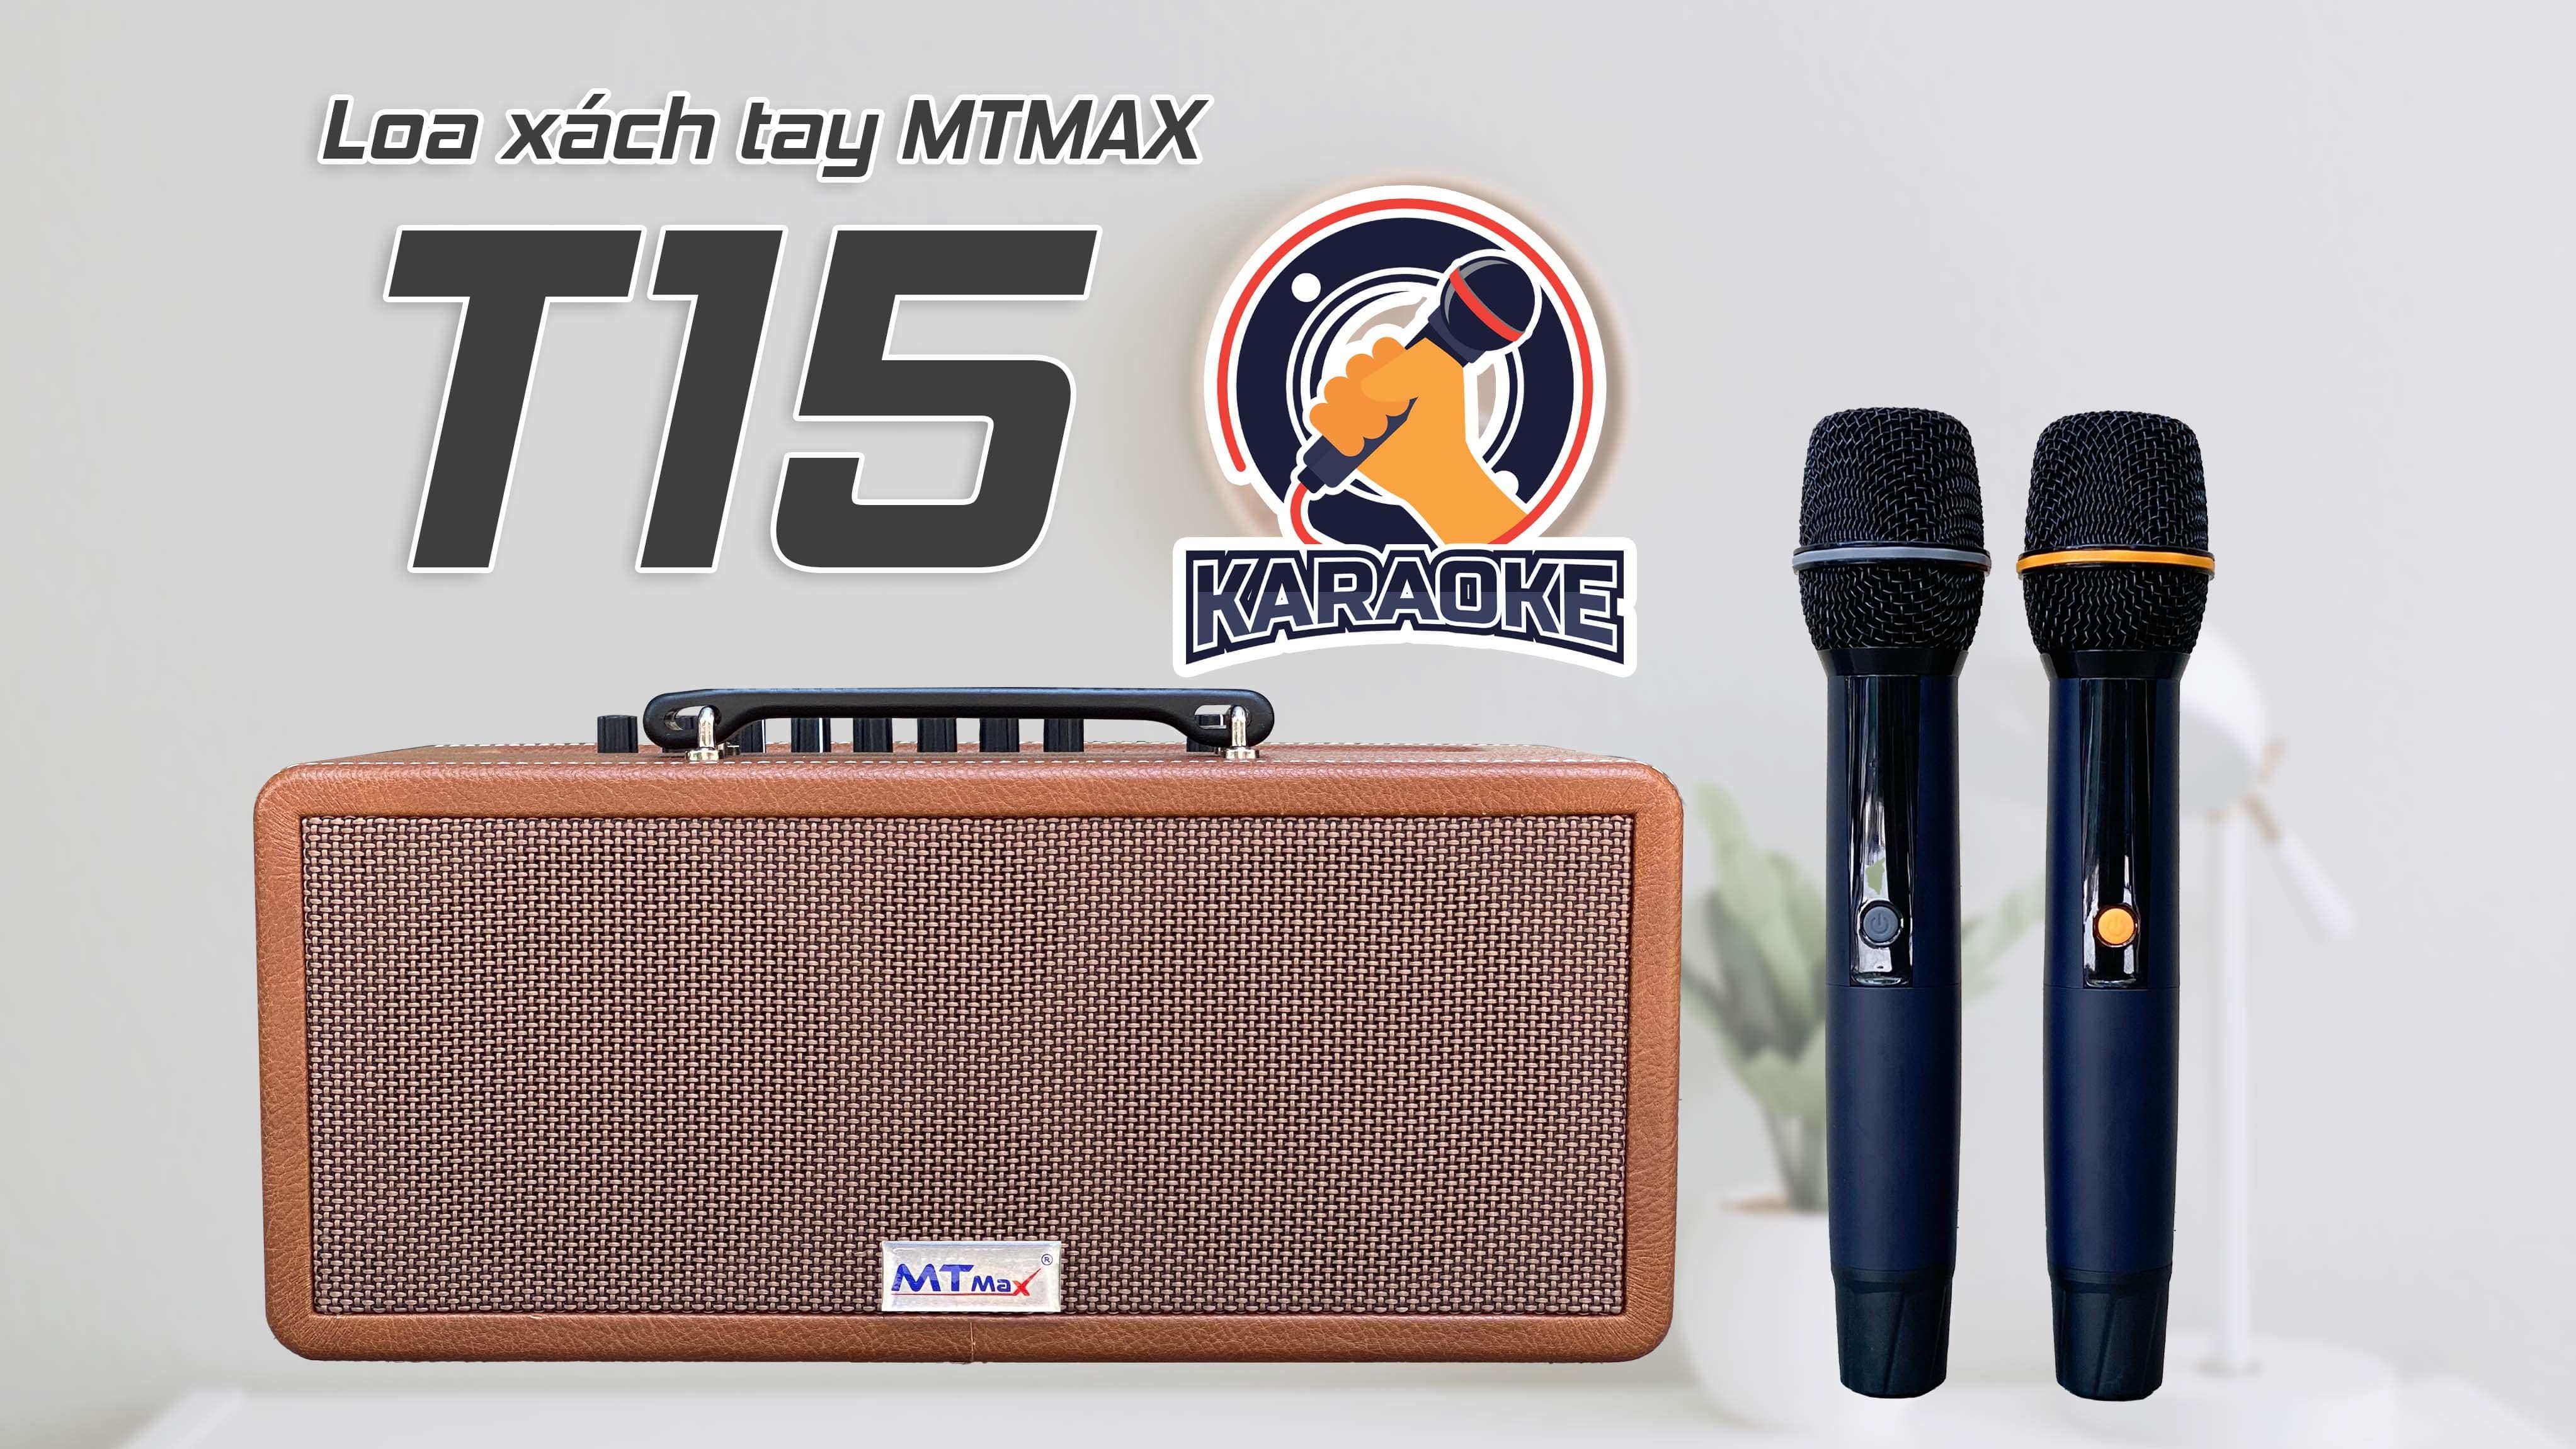 Loa kéo xách tay du lịch MTMAX T15 tích hợp vang chuyên nghiệp karaoke bluetooth 5.0 thiết kế sang trọng kèm 2 micro không dây hàng chính hãng